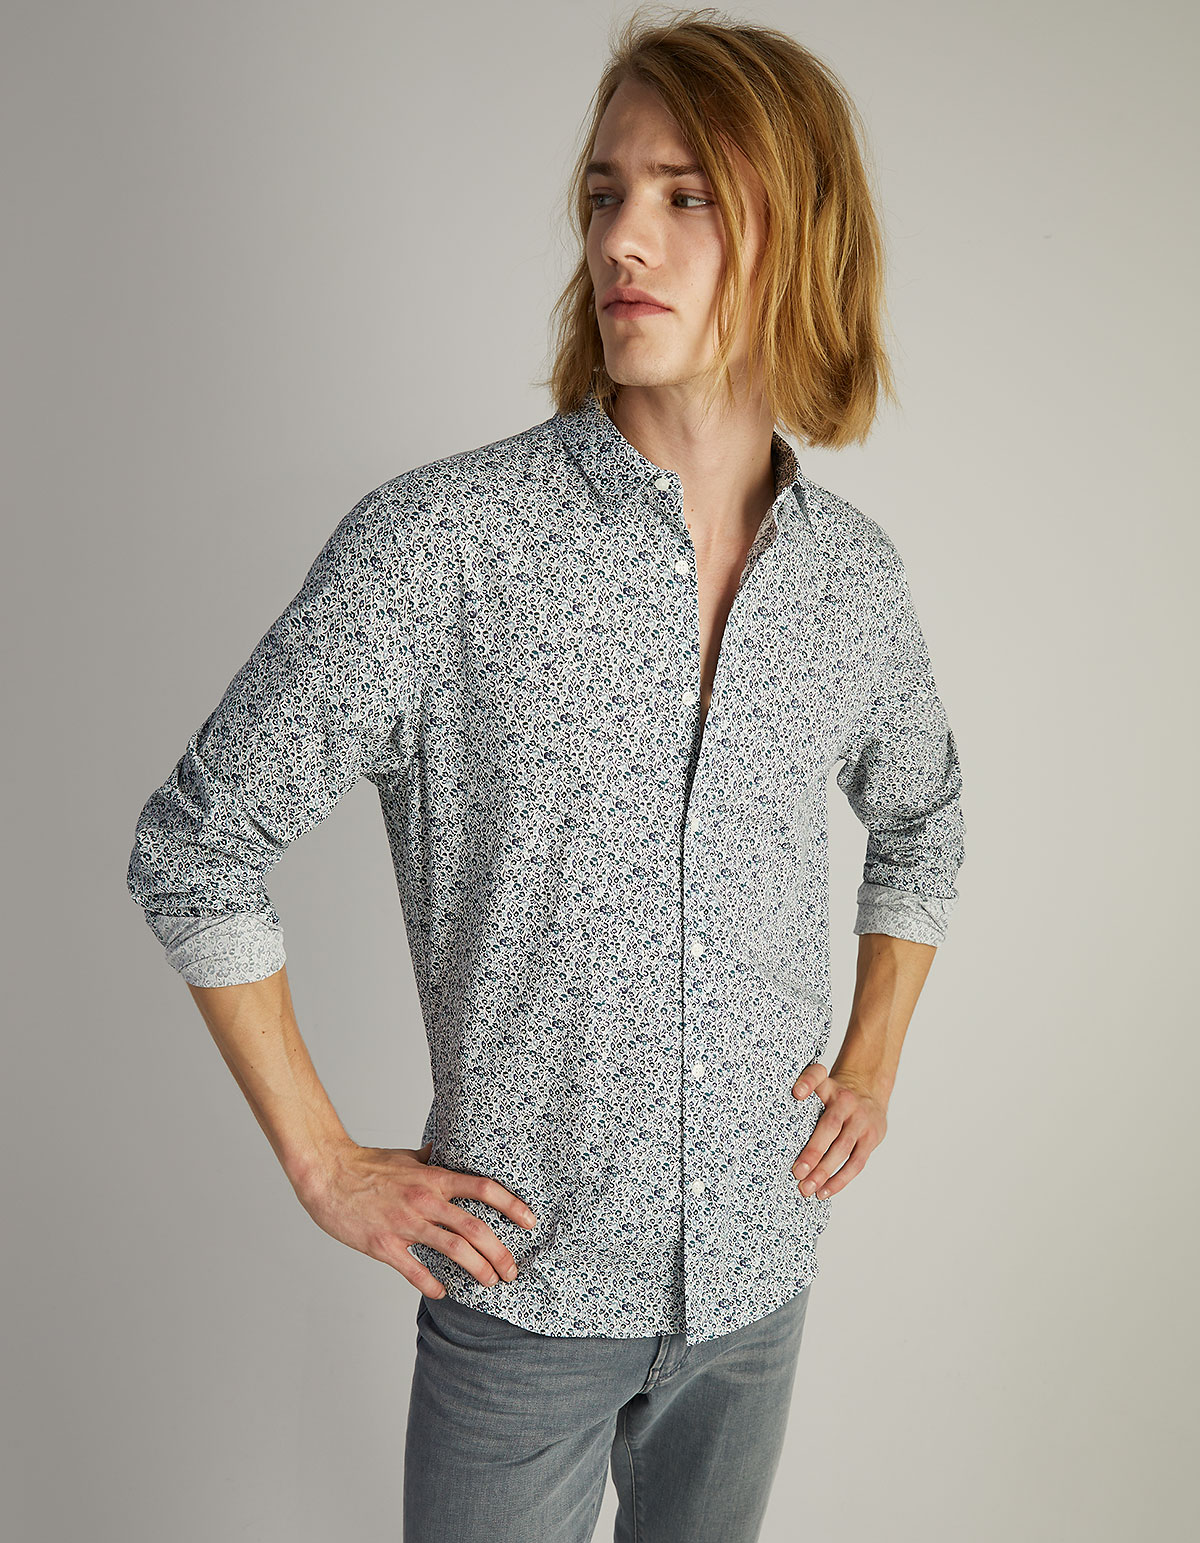 Men’s aqua floral print SLIM shirt